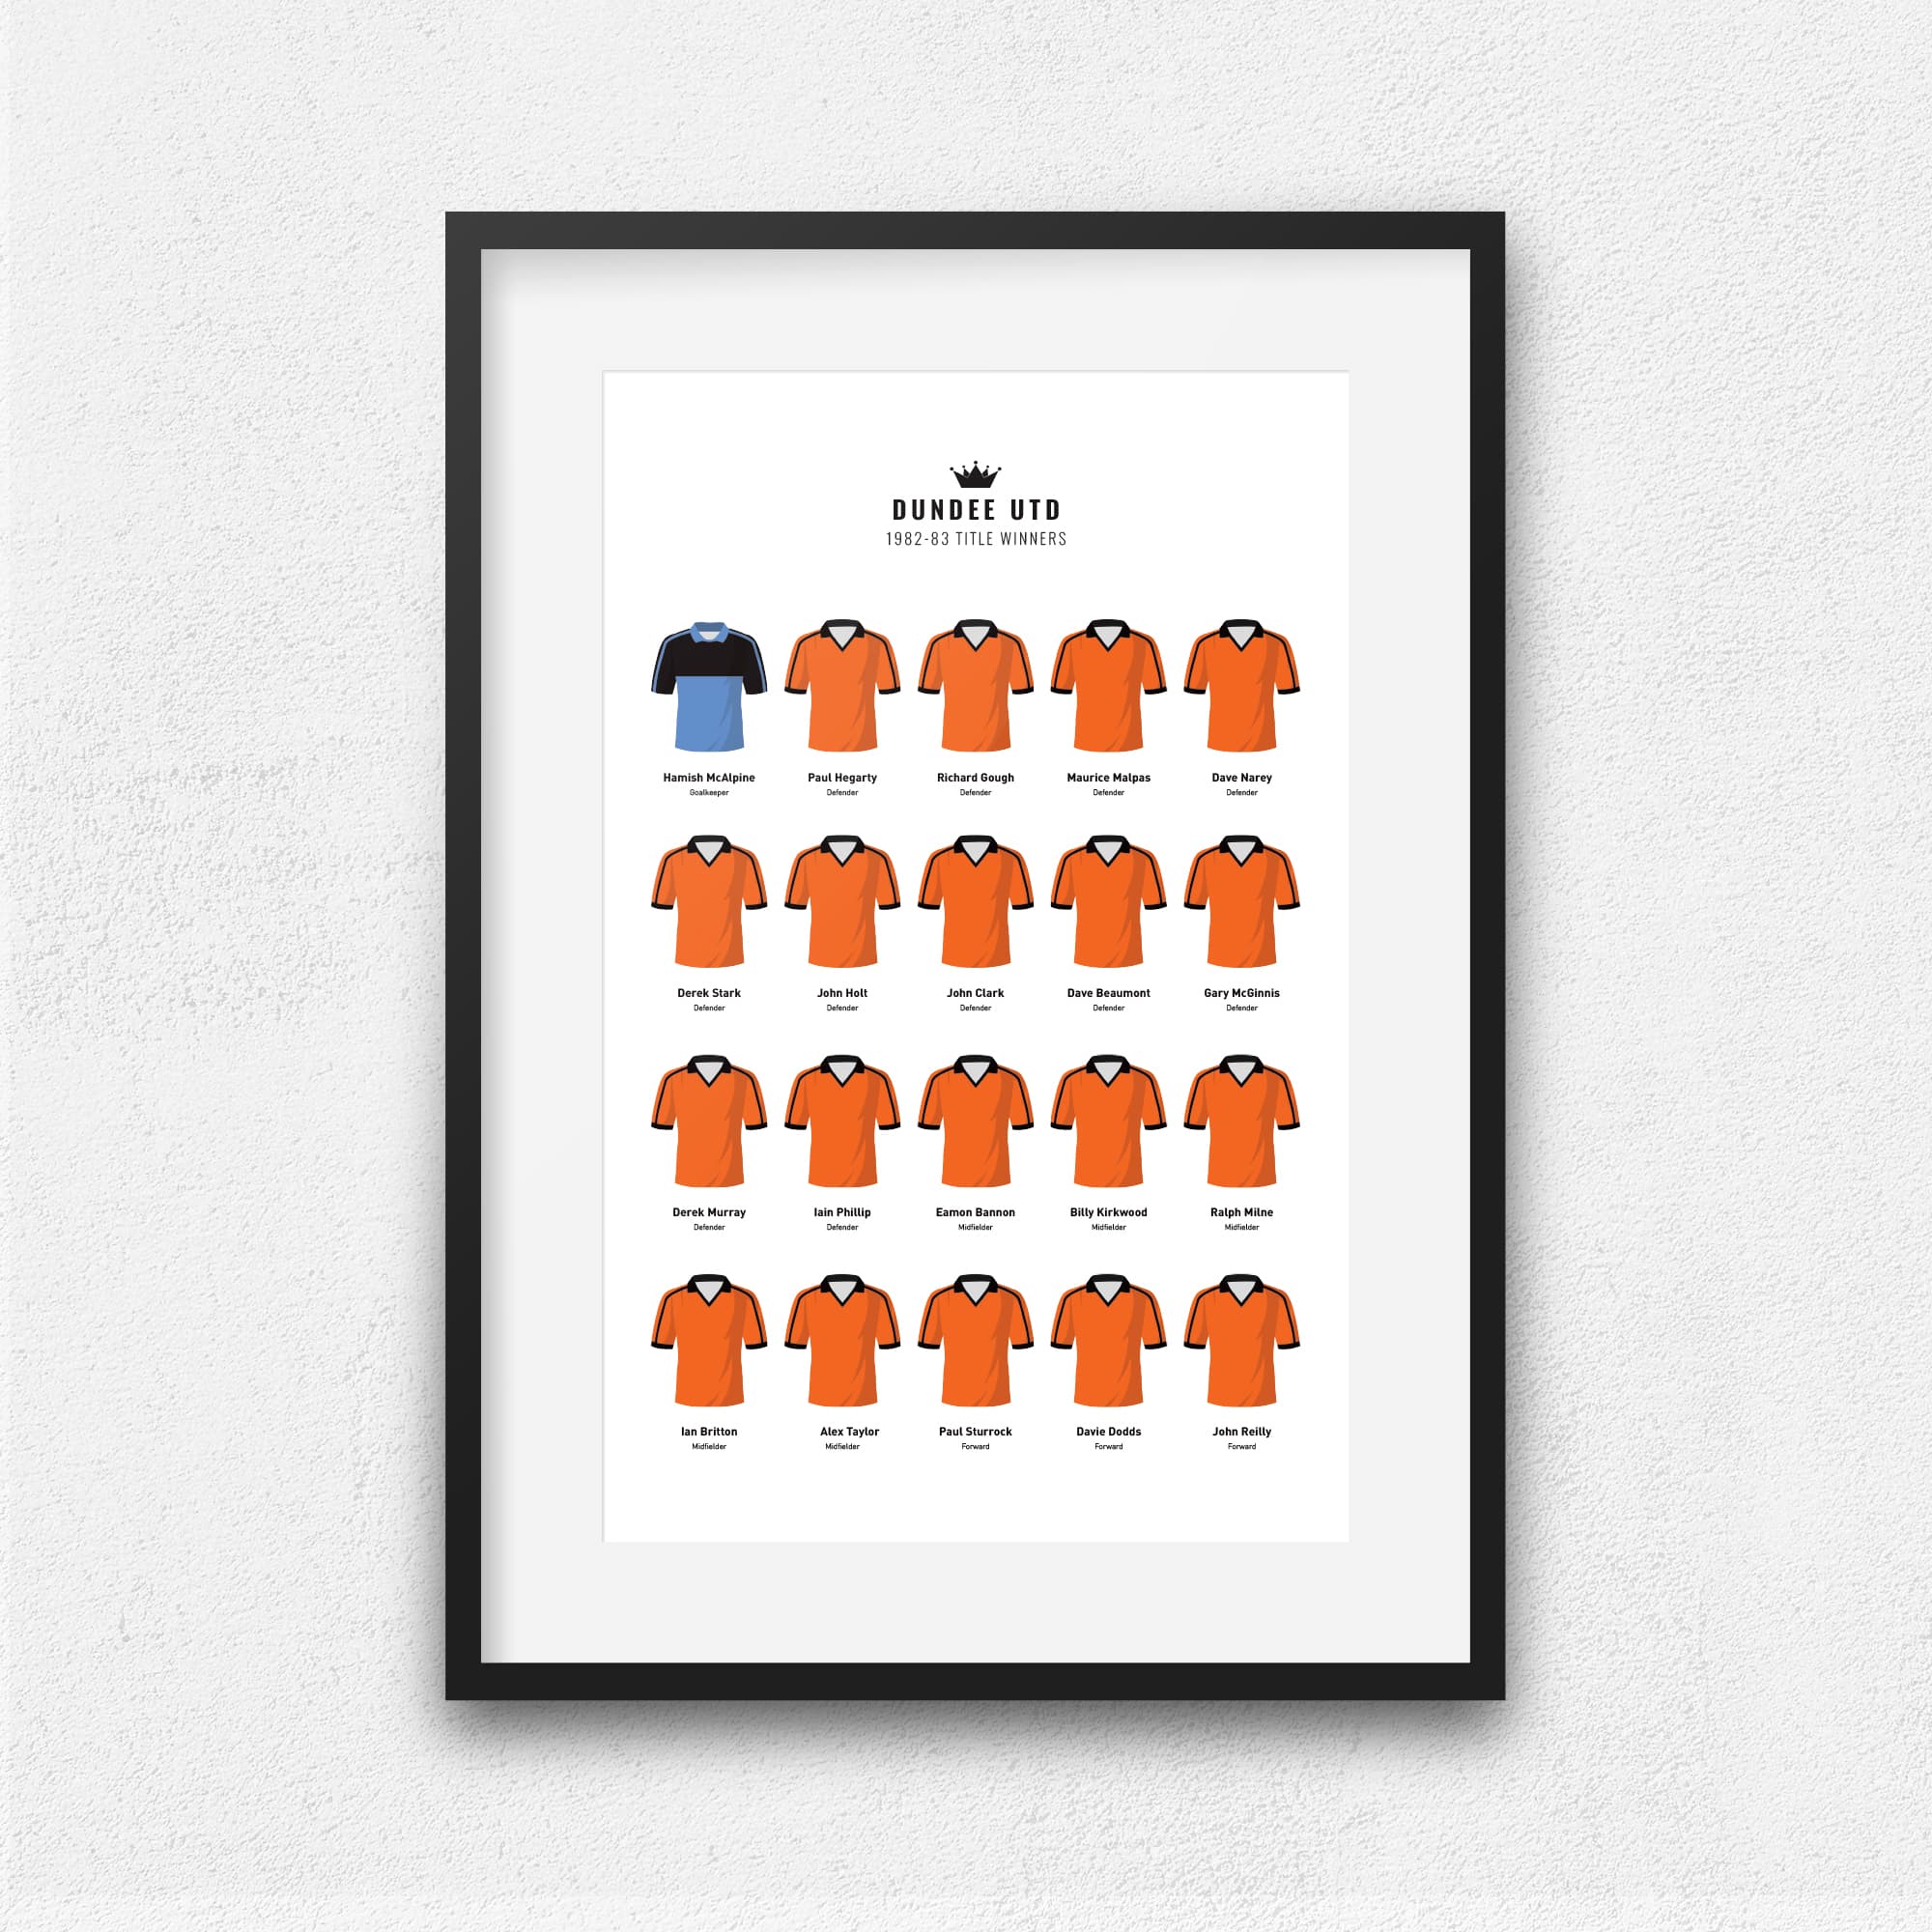 Dundee Utd 1983 Title Winners Football Team Print Good Team On Paper